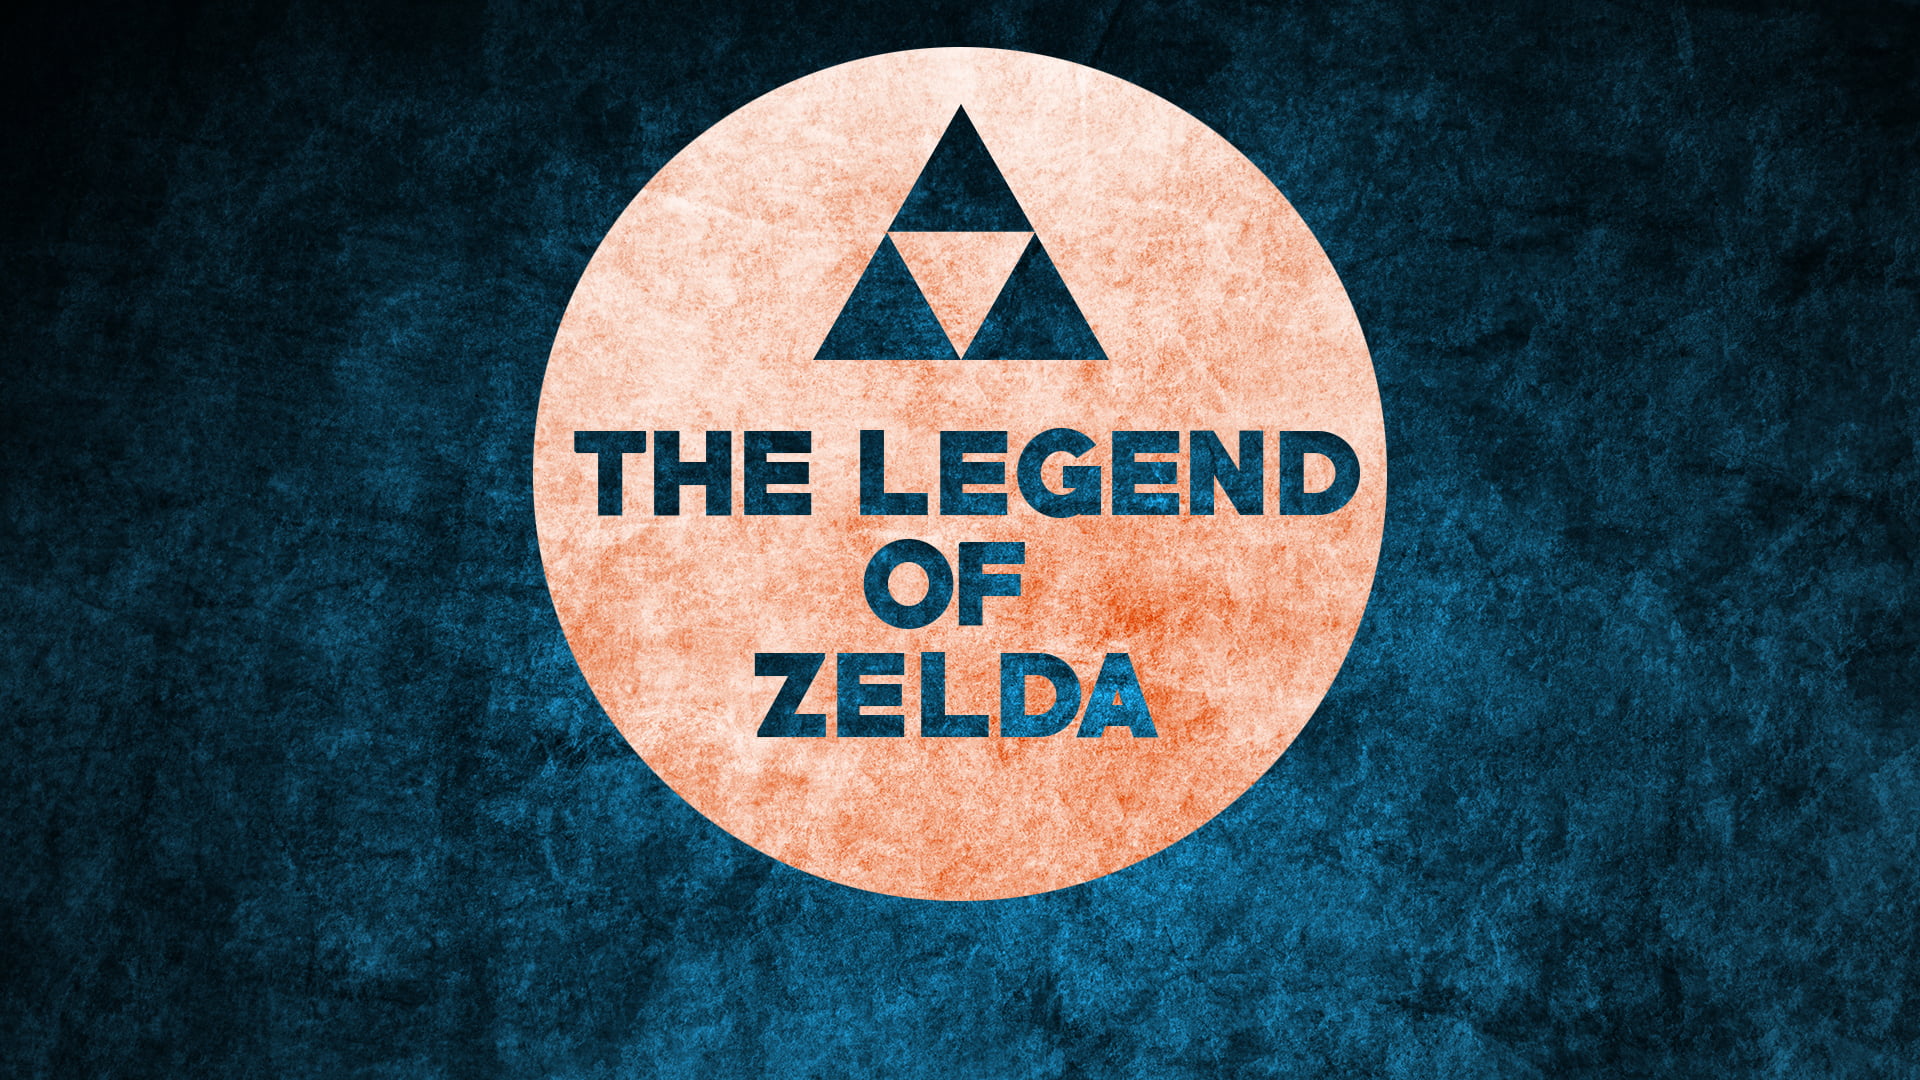 Online crop | The Legend of Zelda logo, The Legend of Zelda, Nintendo ...